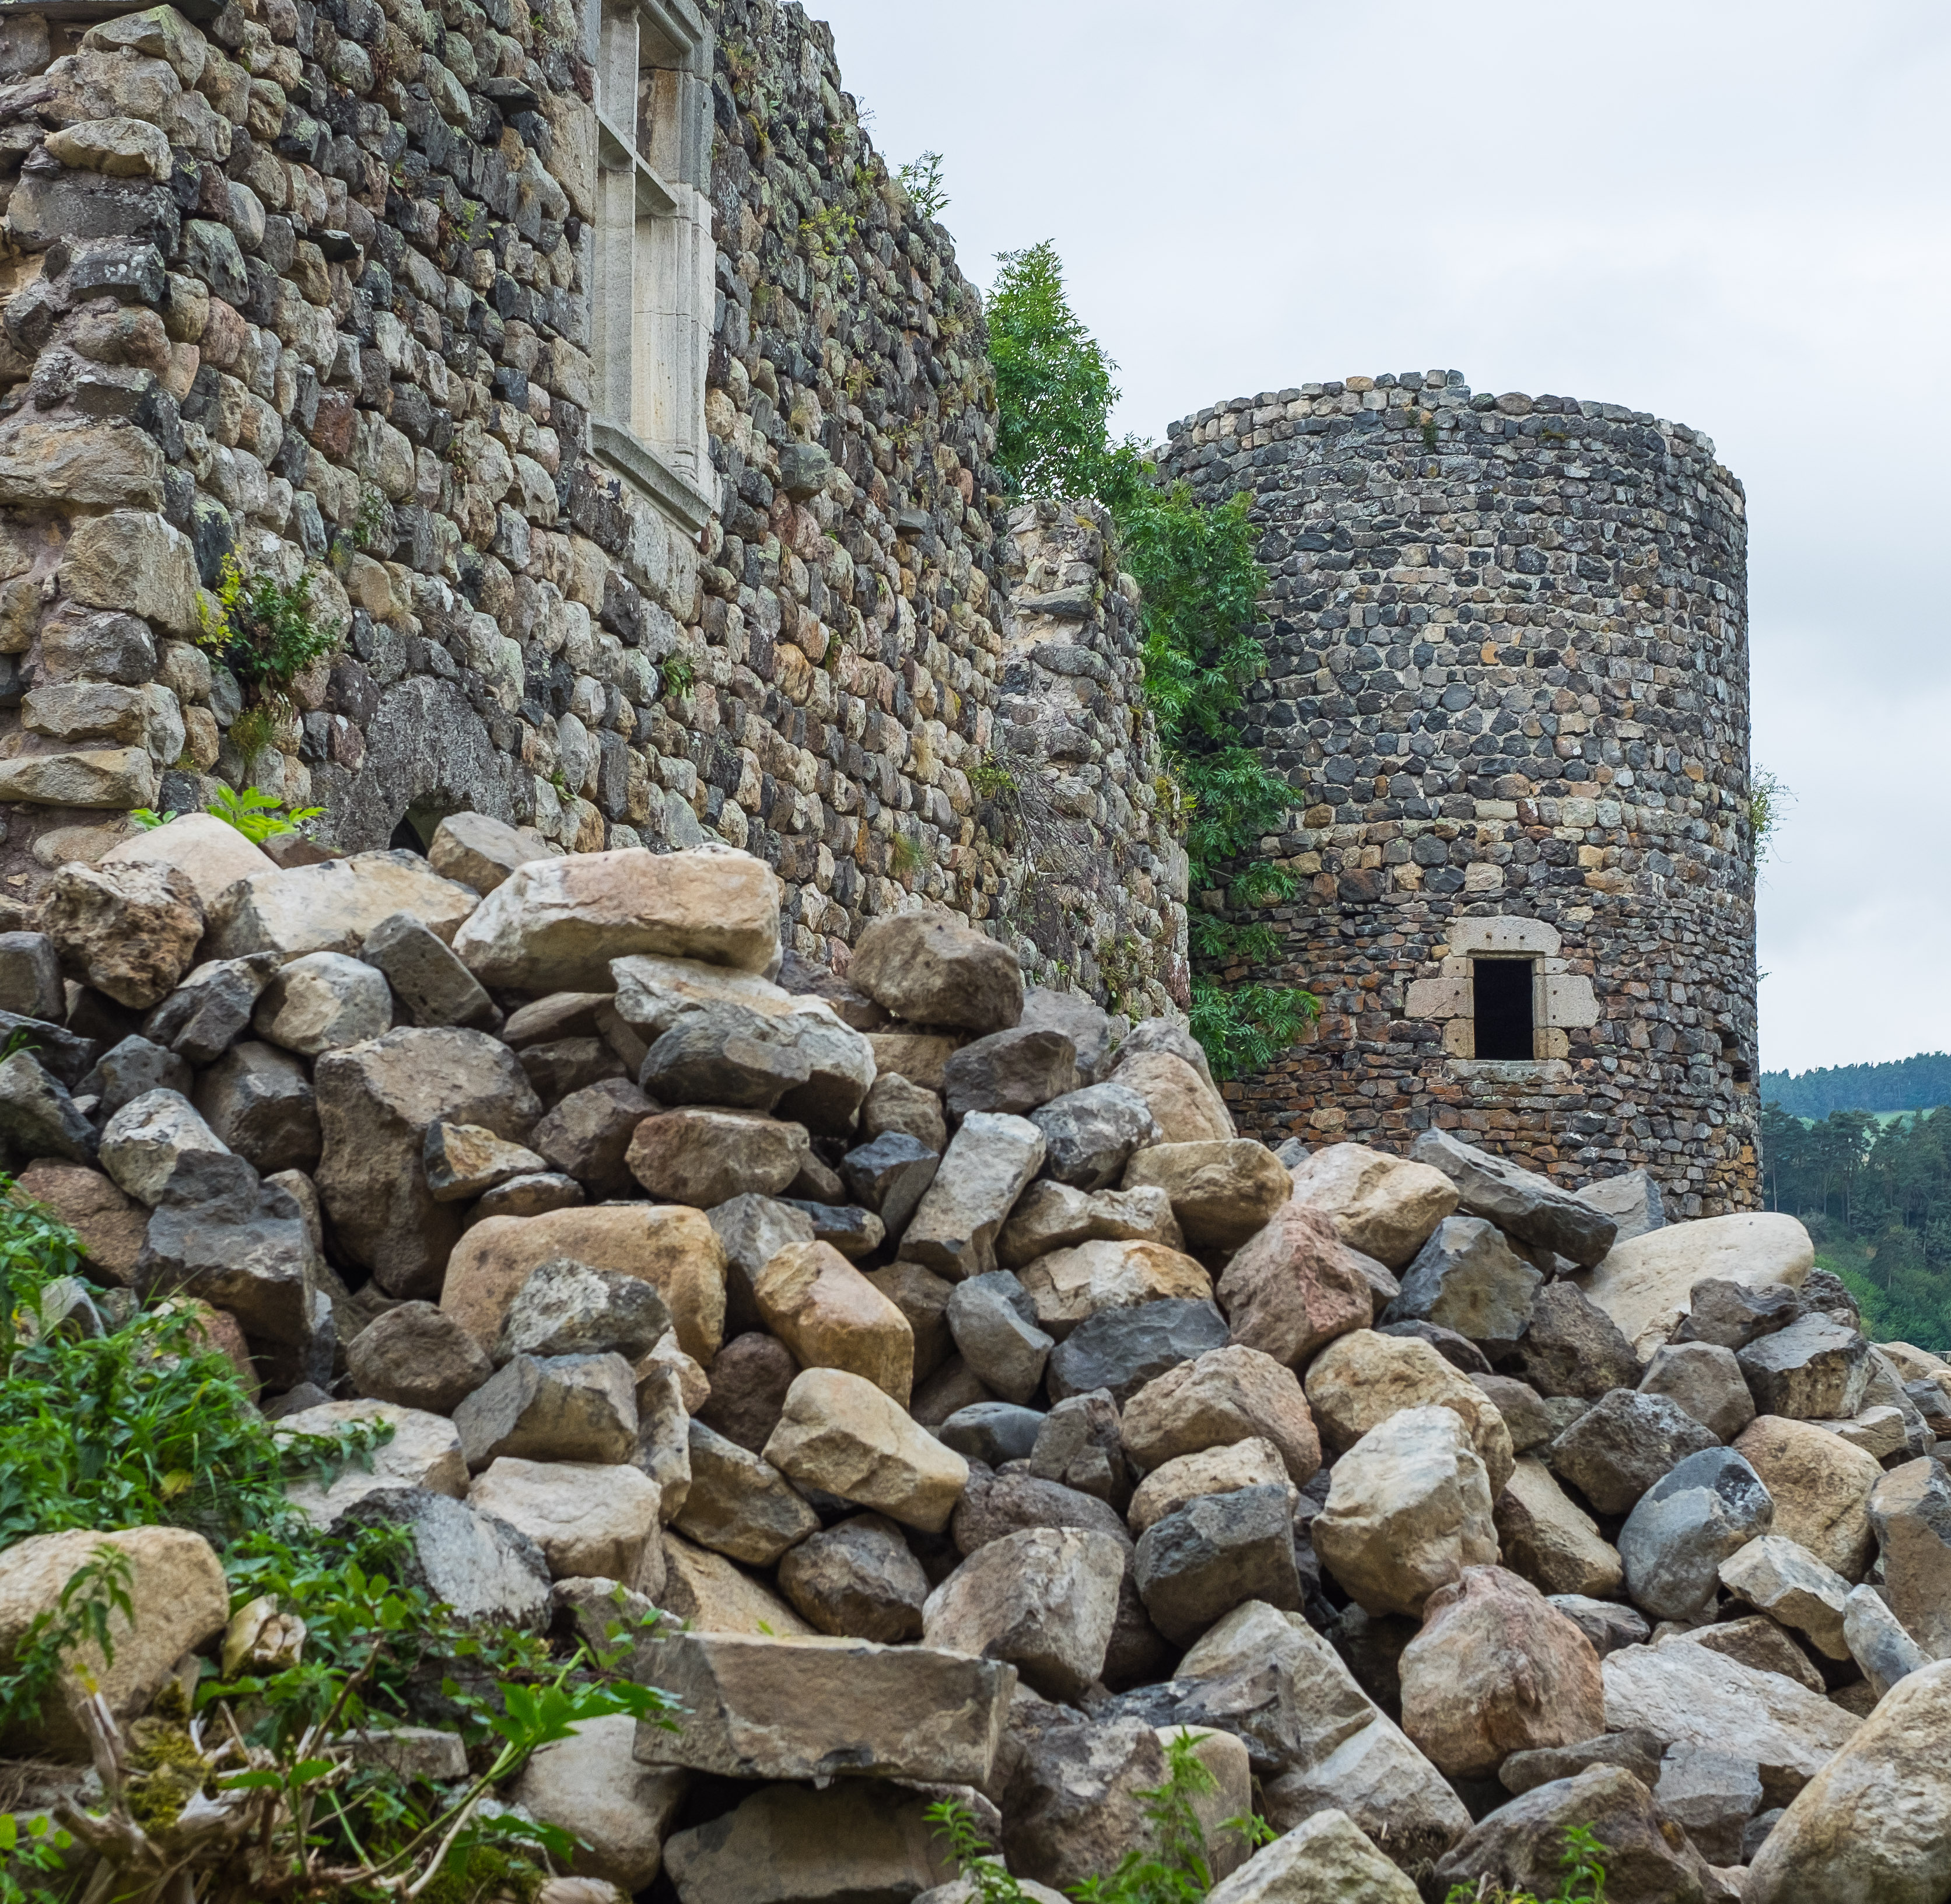 Arlempdes Auvergne Medieval Castle Chateau